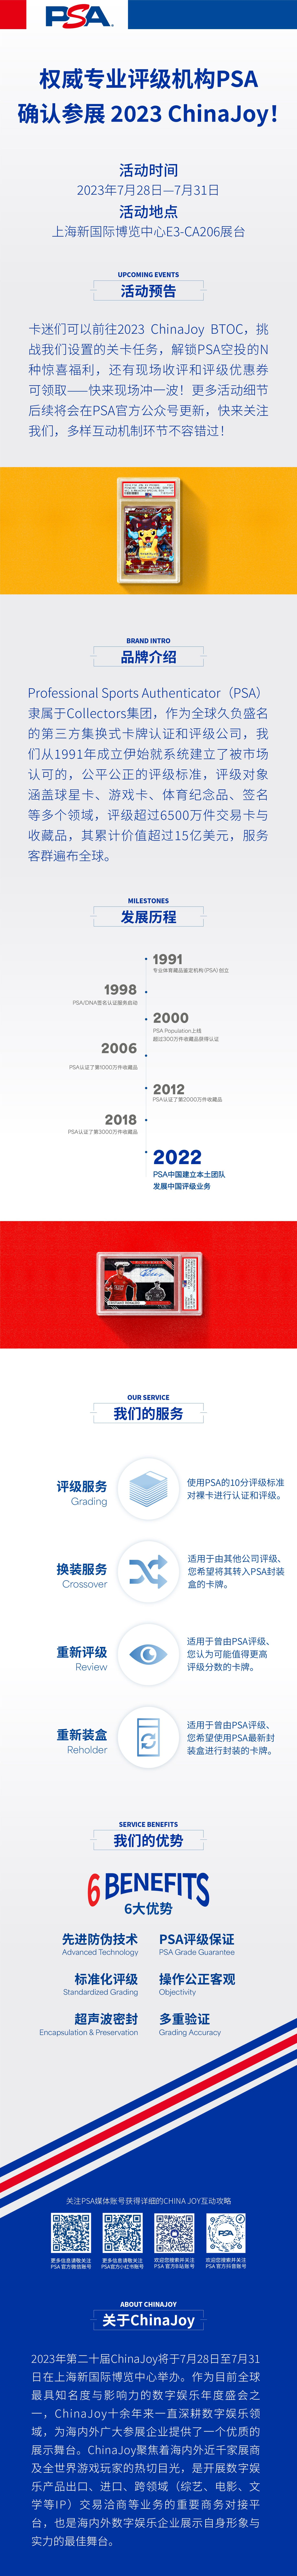 权威专业评级机构 PSA 确认参展 2023 ChinaJoy!